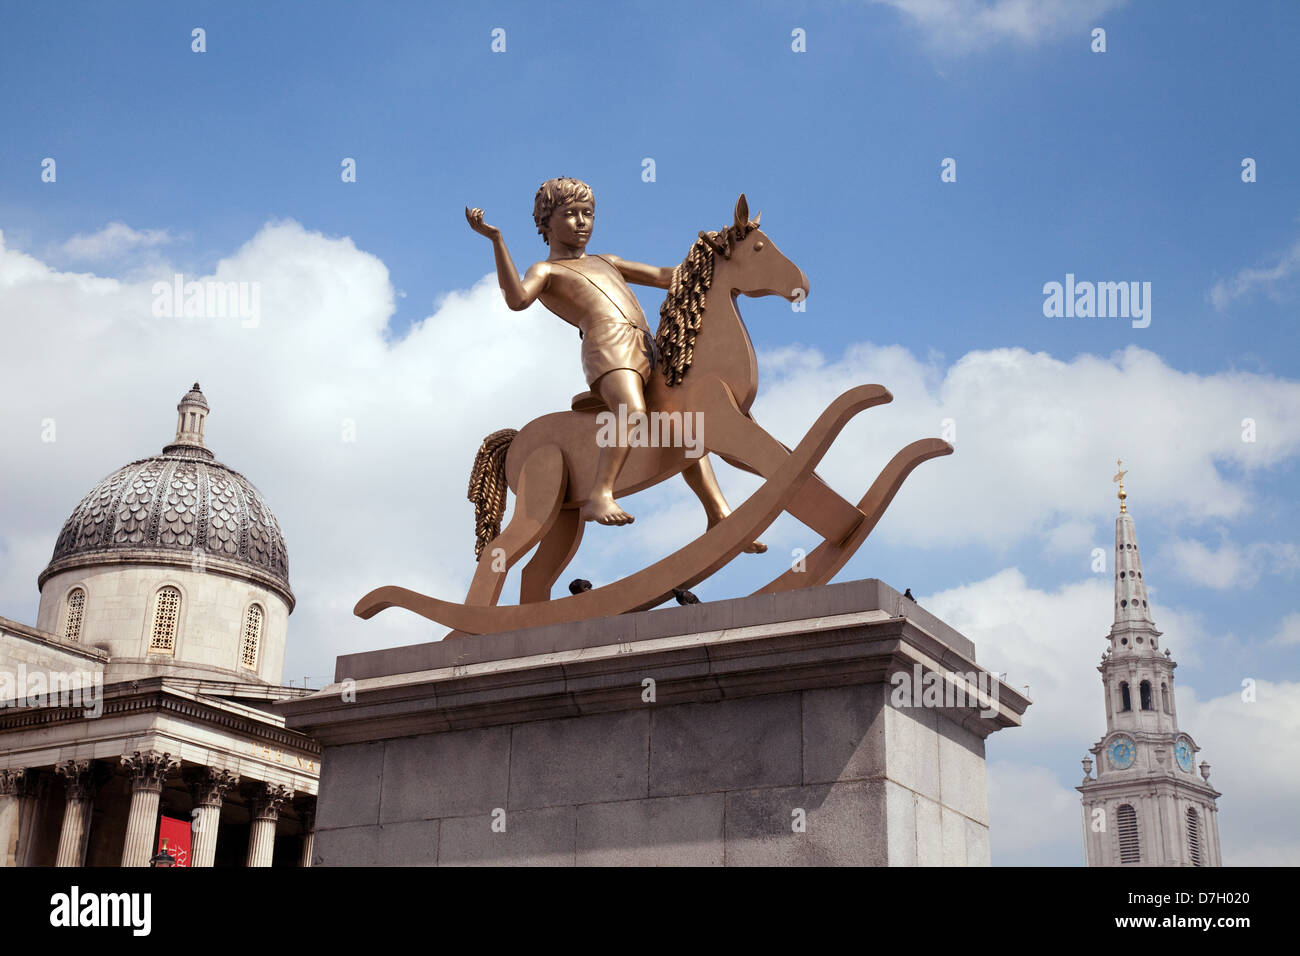 Impotenti strutture - una statua di bronzo di un ragazzino su un cavallo a dondolo, sul quarto plinto, Trafalgar Square Londra Regno Unito 2013 Foto Stock